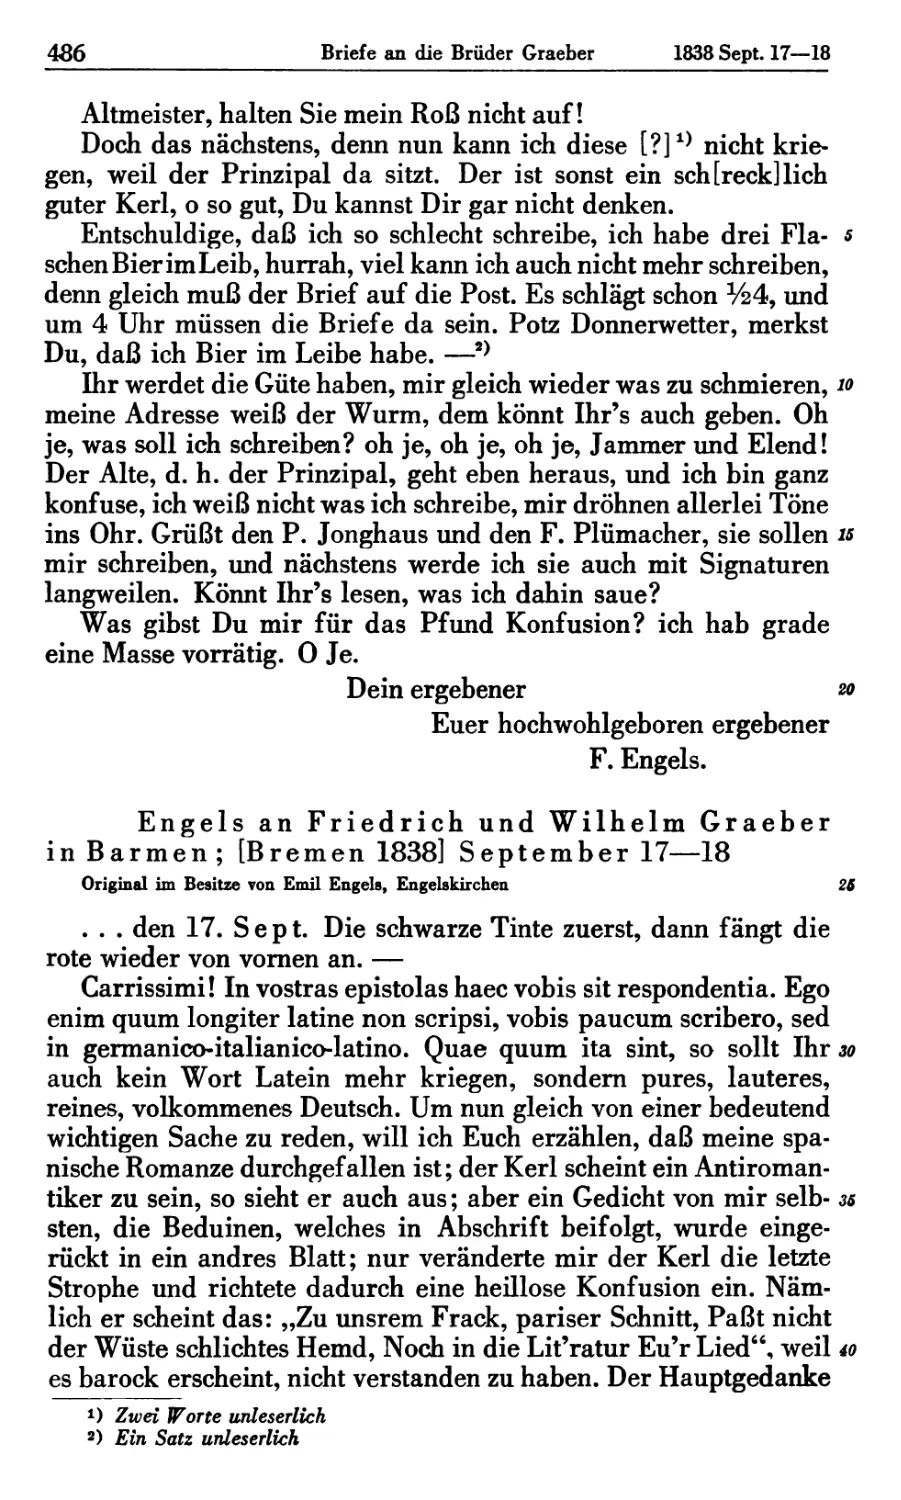 Engels an Friedrich und Wilhelm Graeber in Barmen; [Bremen 1838] September 17—18